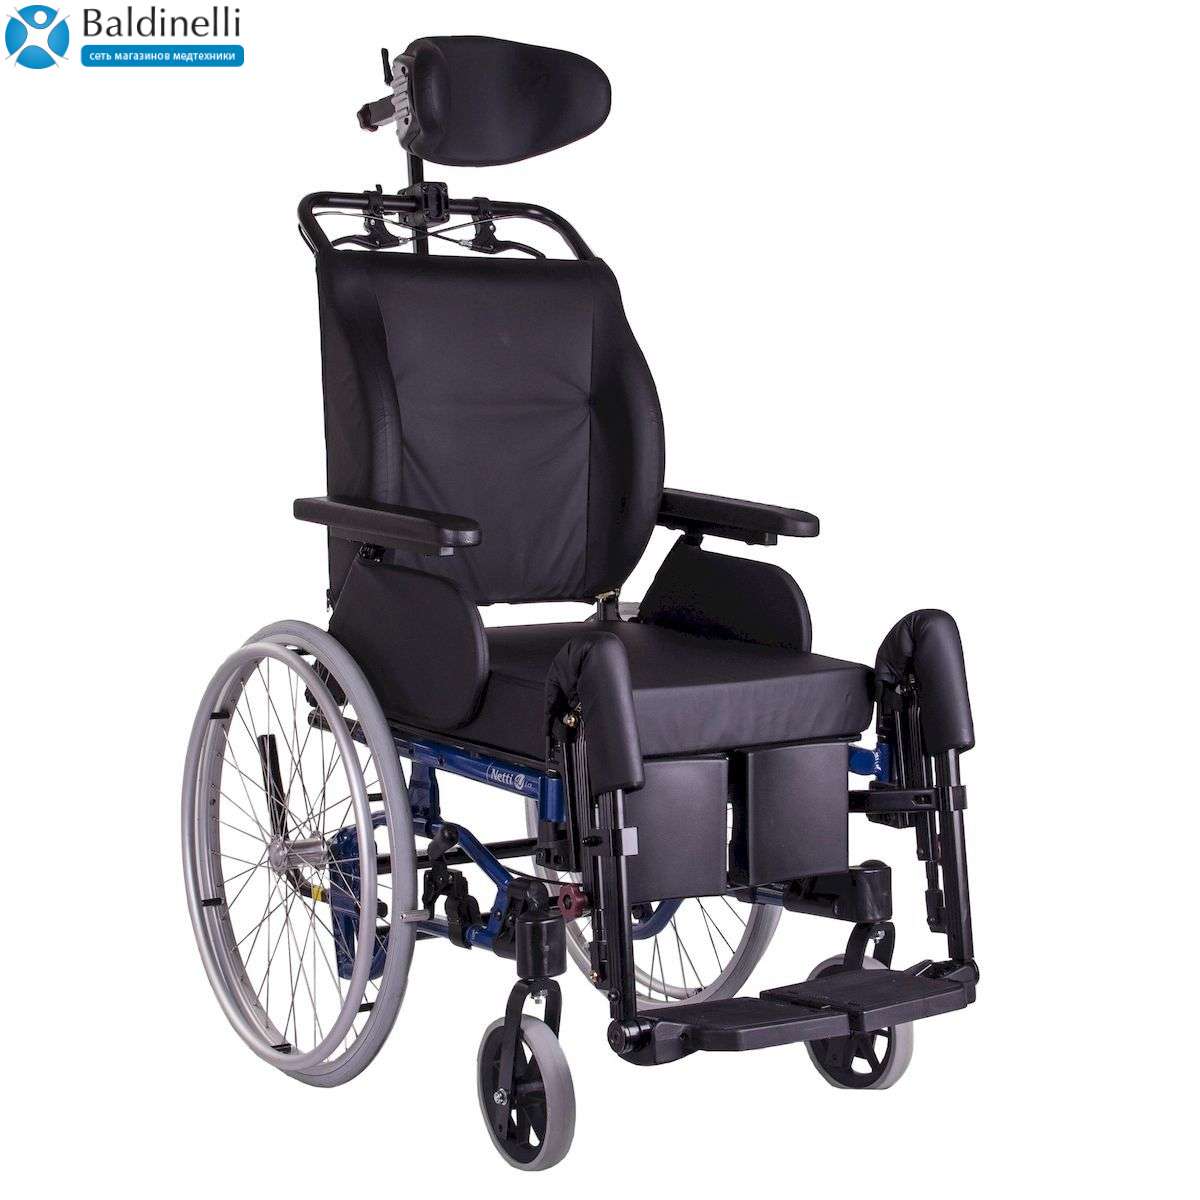 Многофункциональная инвалидная коляска премиум-класса OSD Netti